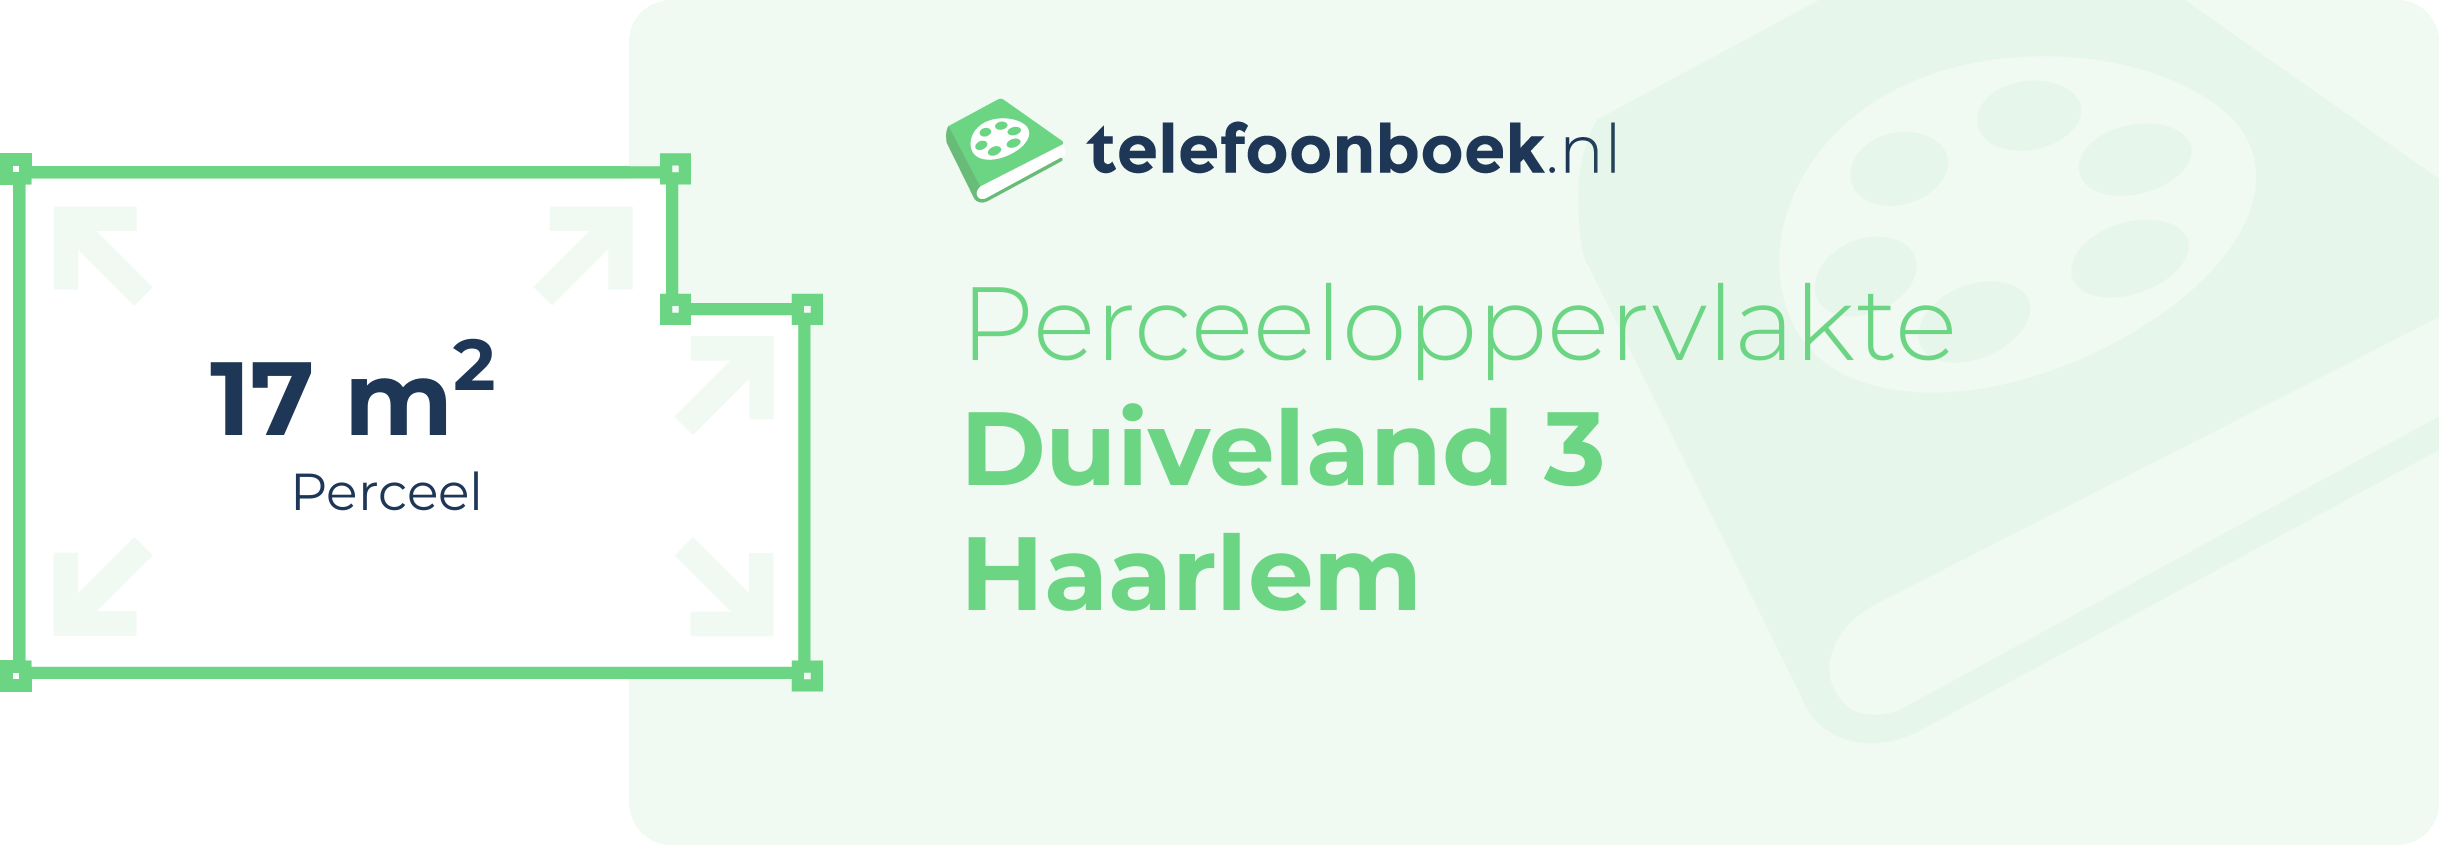 Perceeloppervlakte Duiveland 3 Haarlem